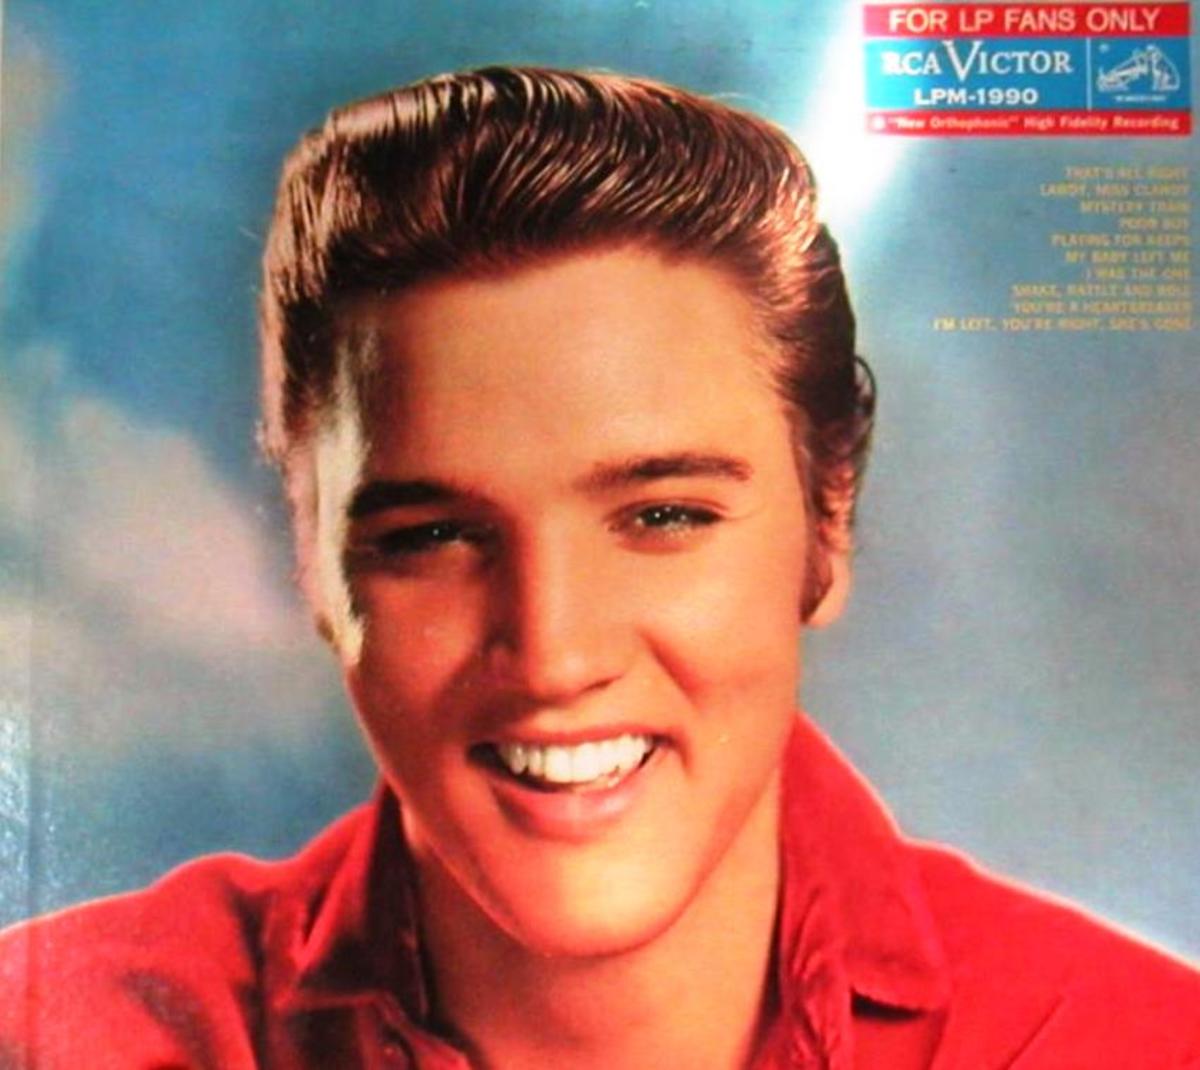 Elvis Presley, the Man Behind the Image